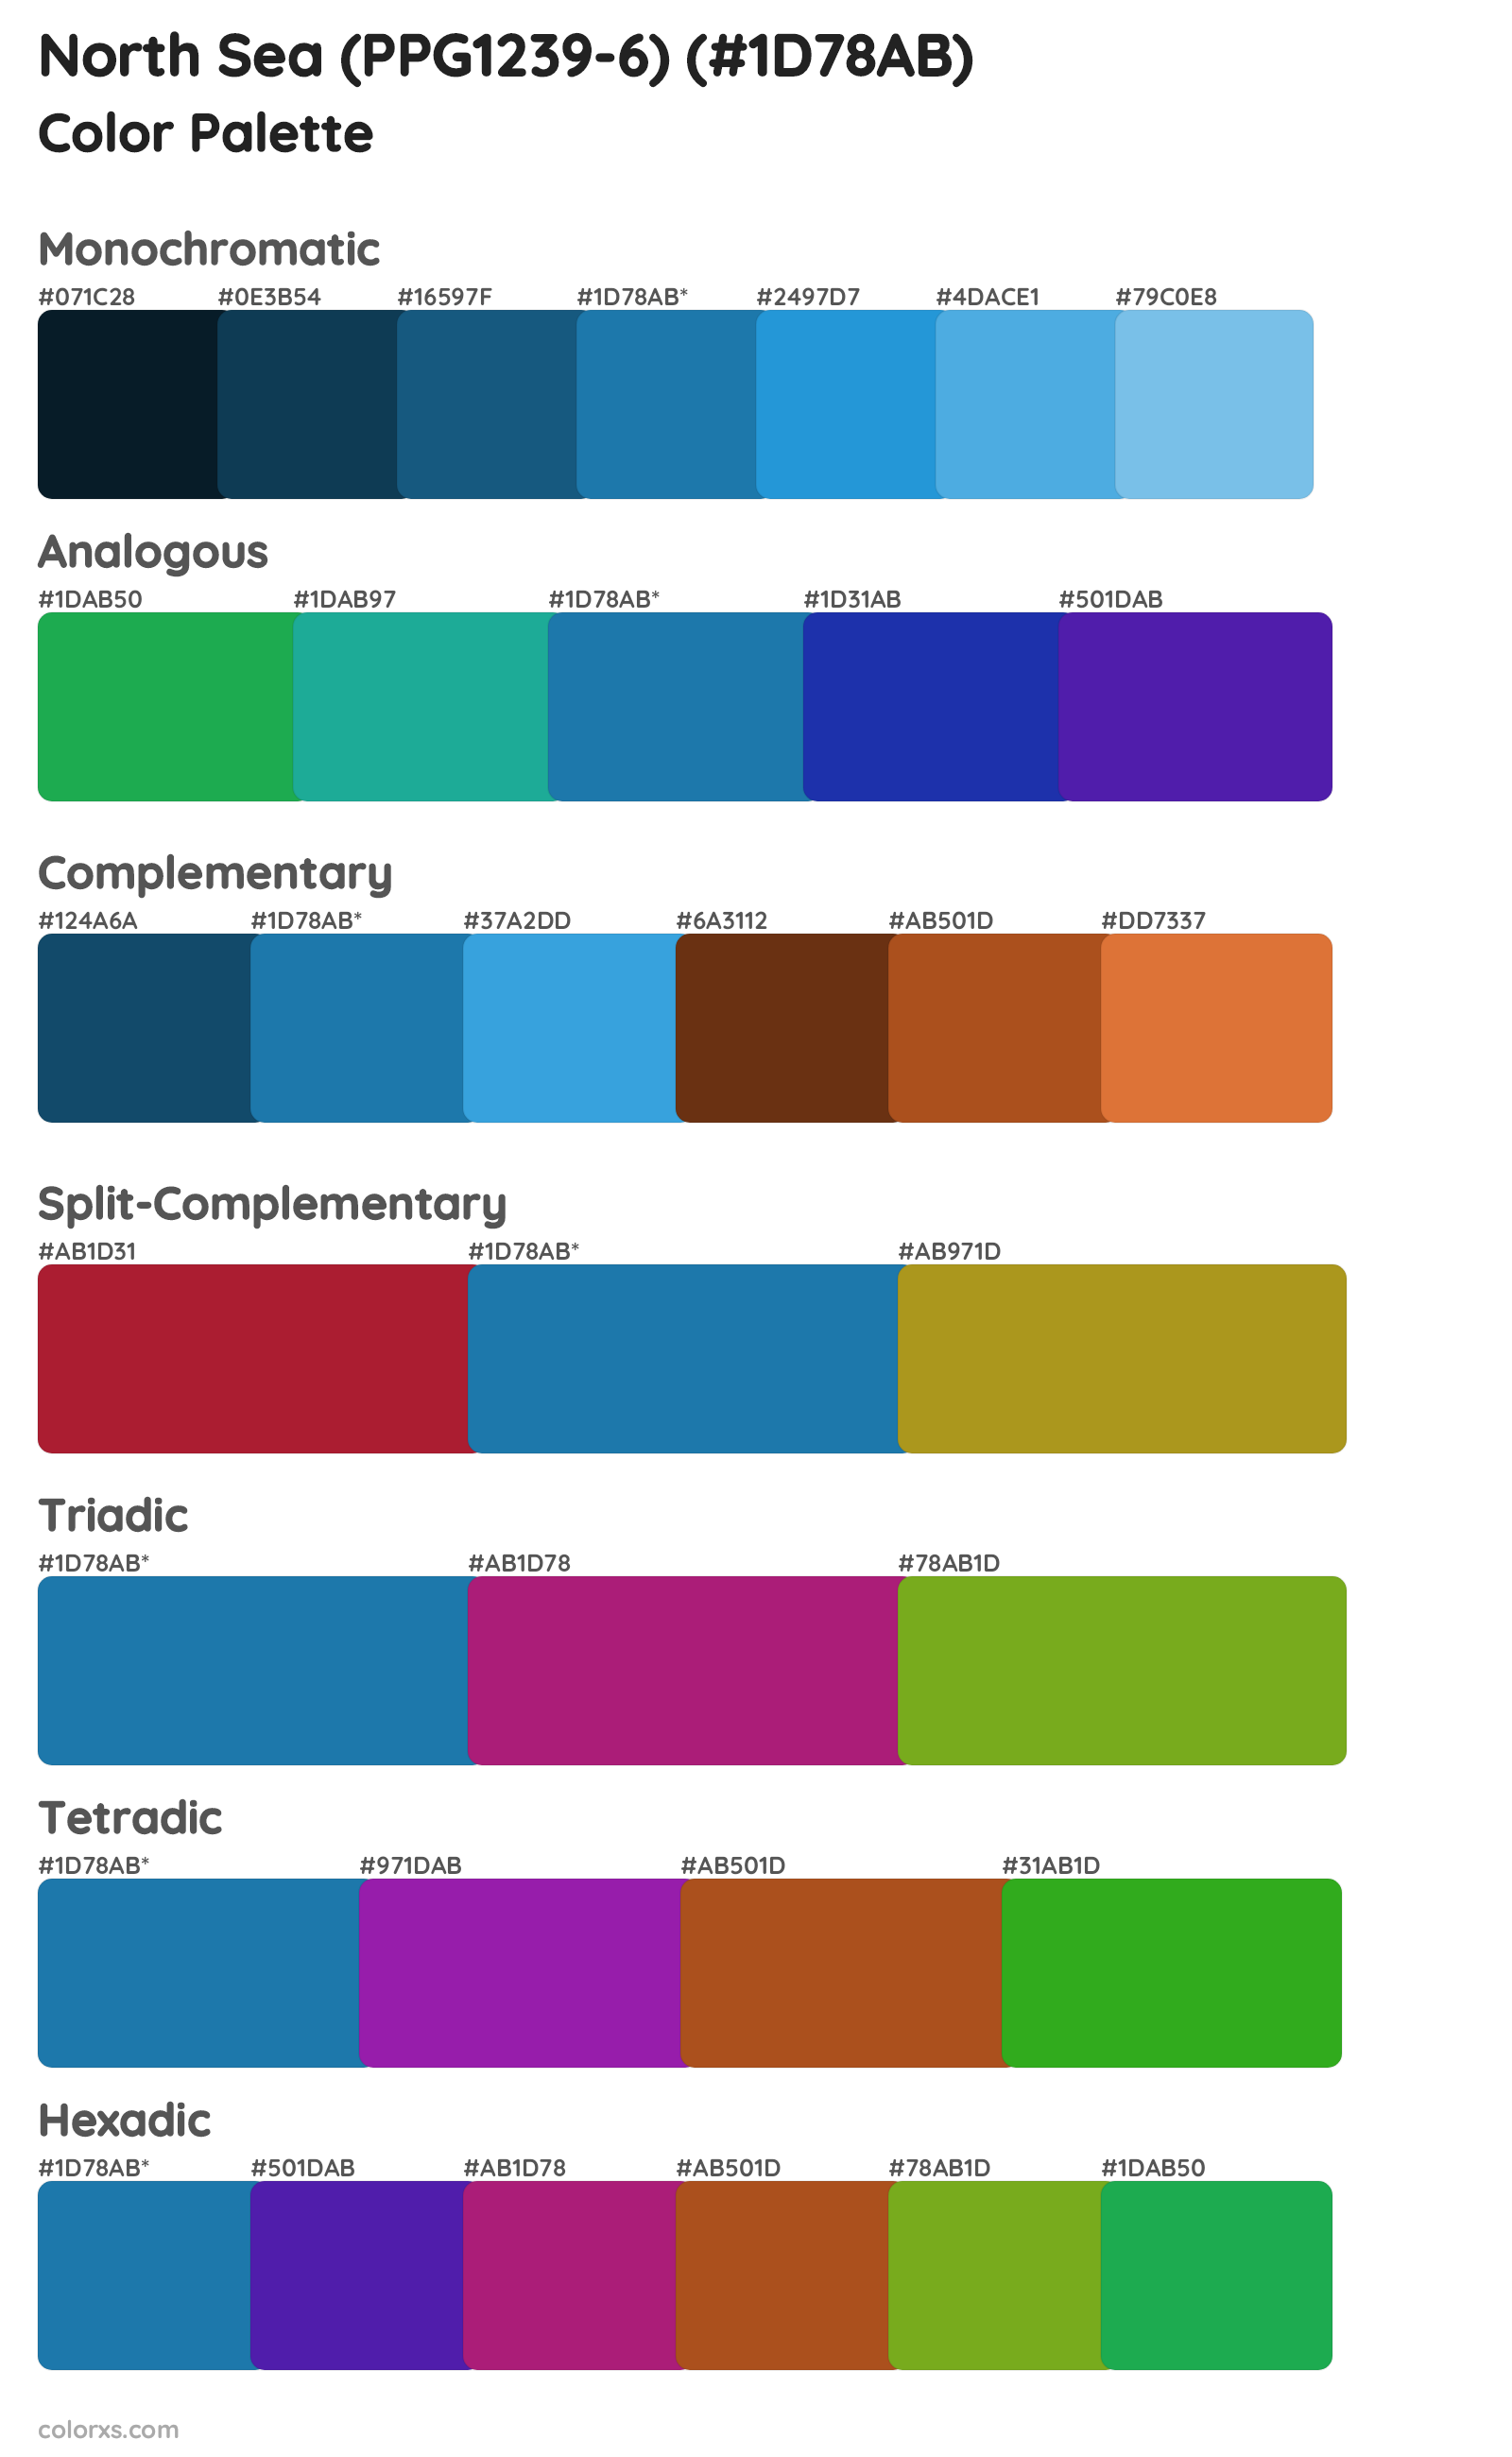 North Sea (PPG1239-6) Color Scheme Palettes